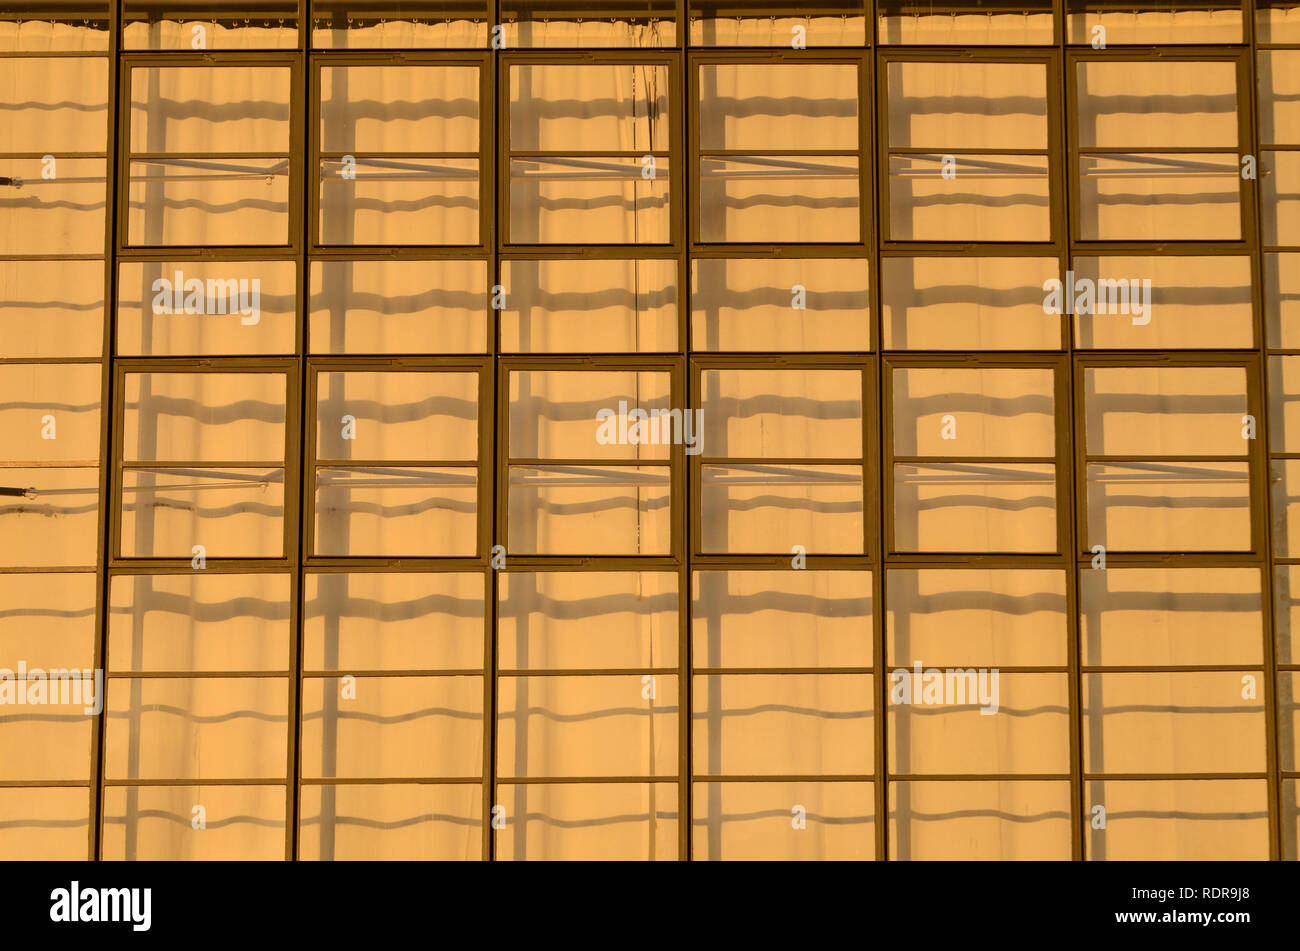 Deutschland, Dessau - Rosslau, berühmten Bauhaus, erbaut 1925-1926 nach der  Planung von Walter Gropius als Gebäude für das Bauhaus für Architektur,  Kunst und Design, quadratische Fenster und Gardinen Stockfotografie - Alamy